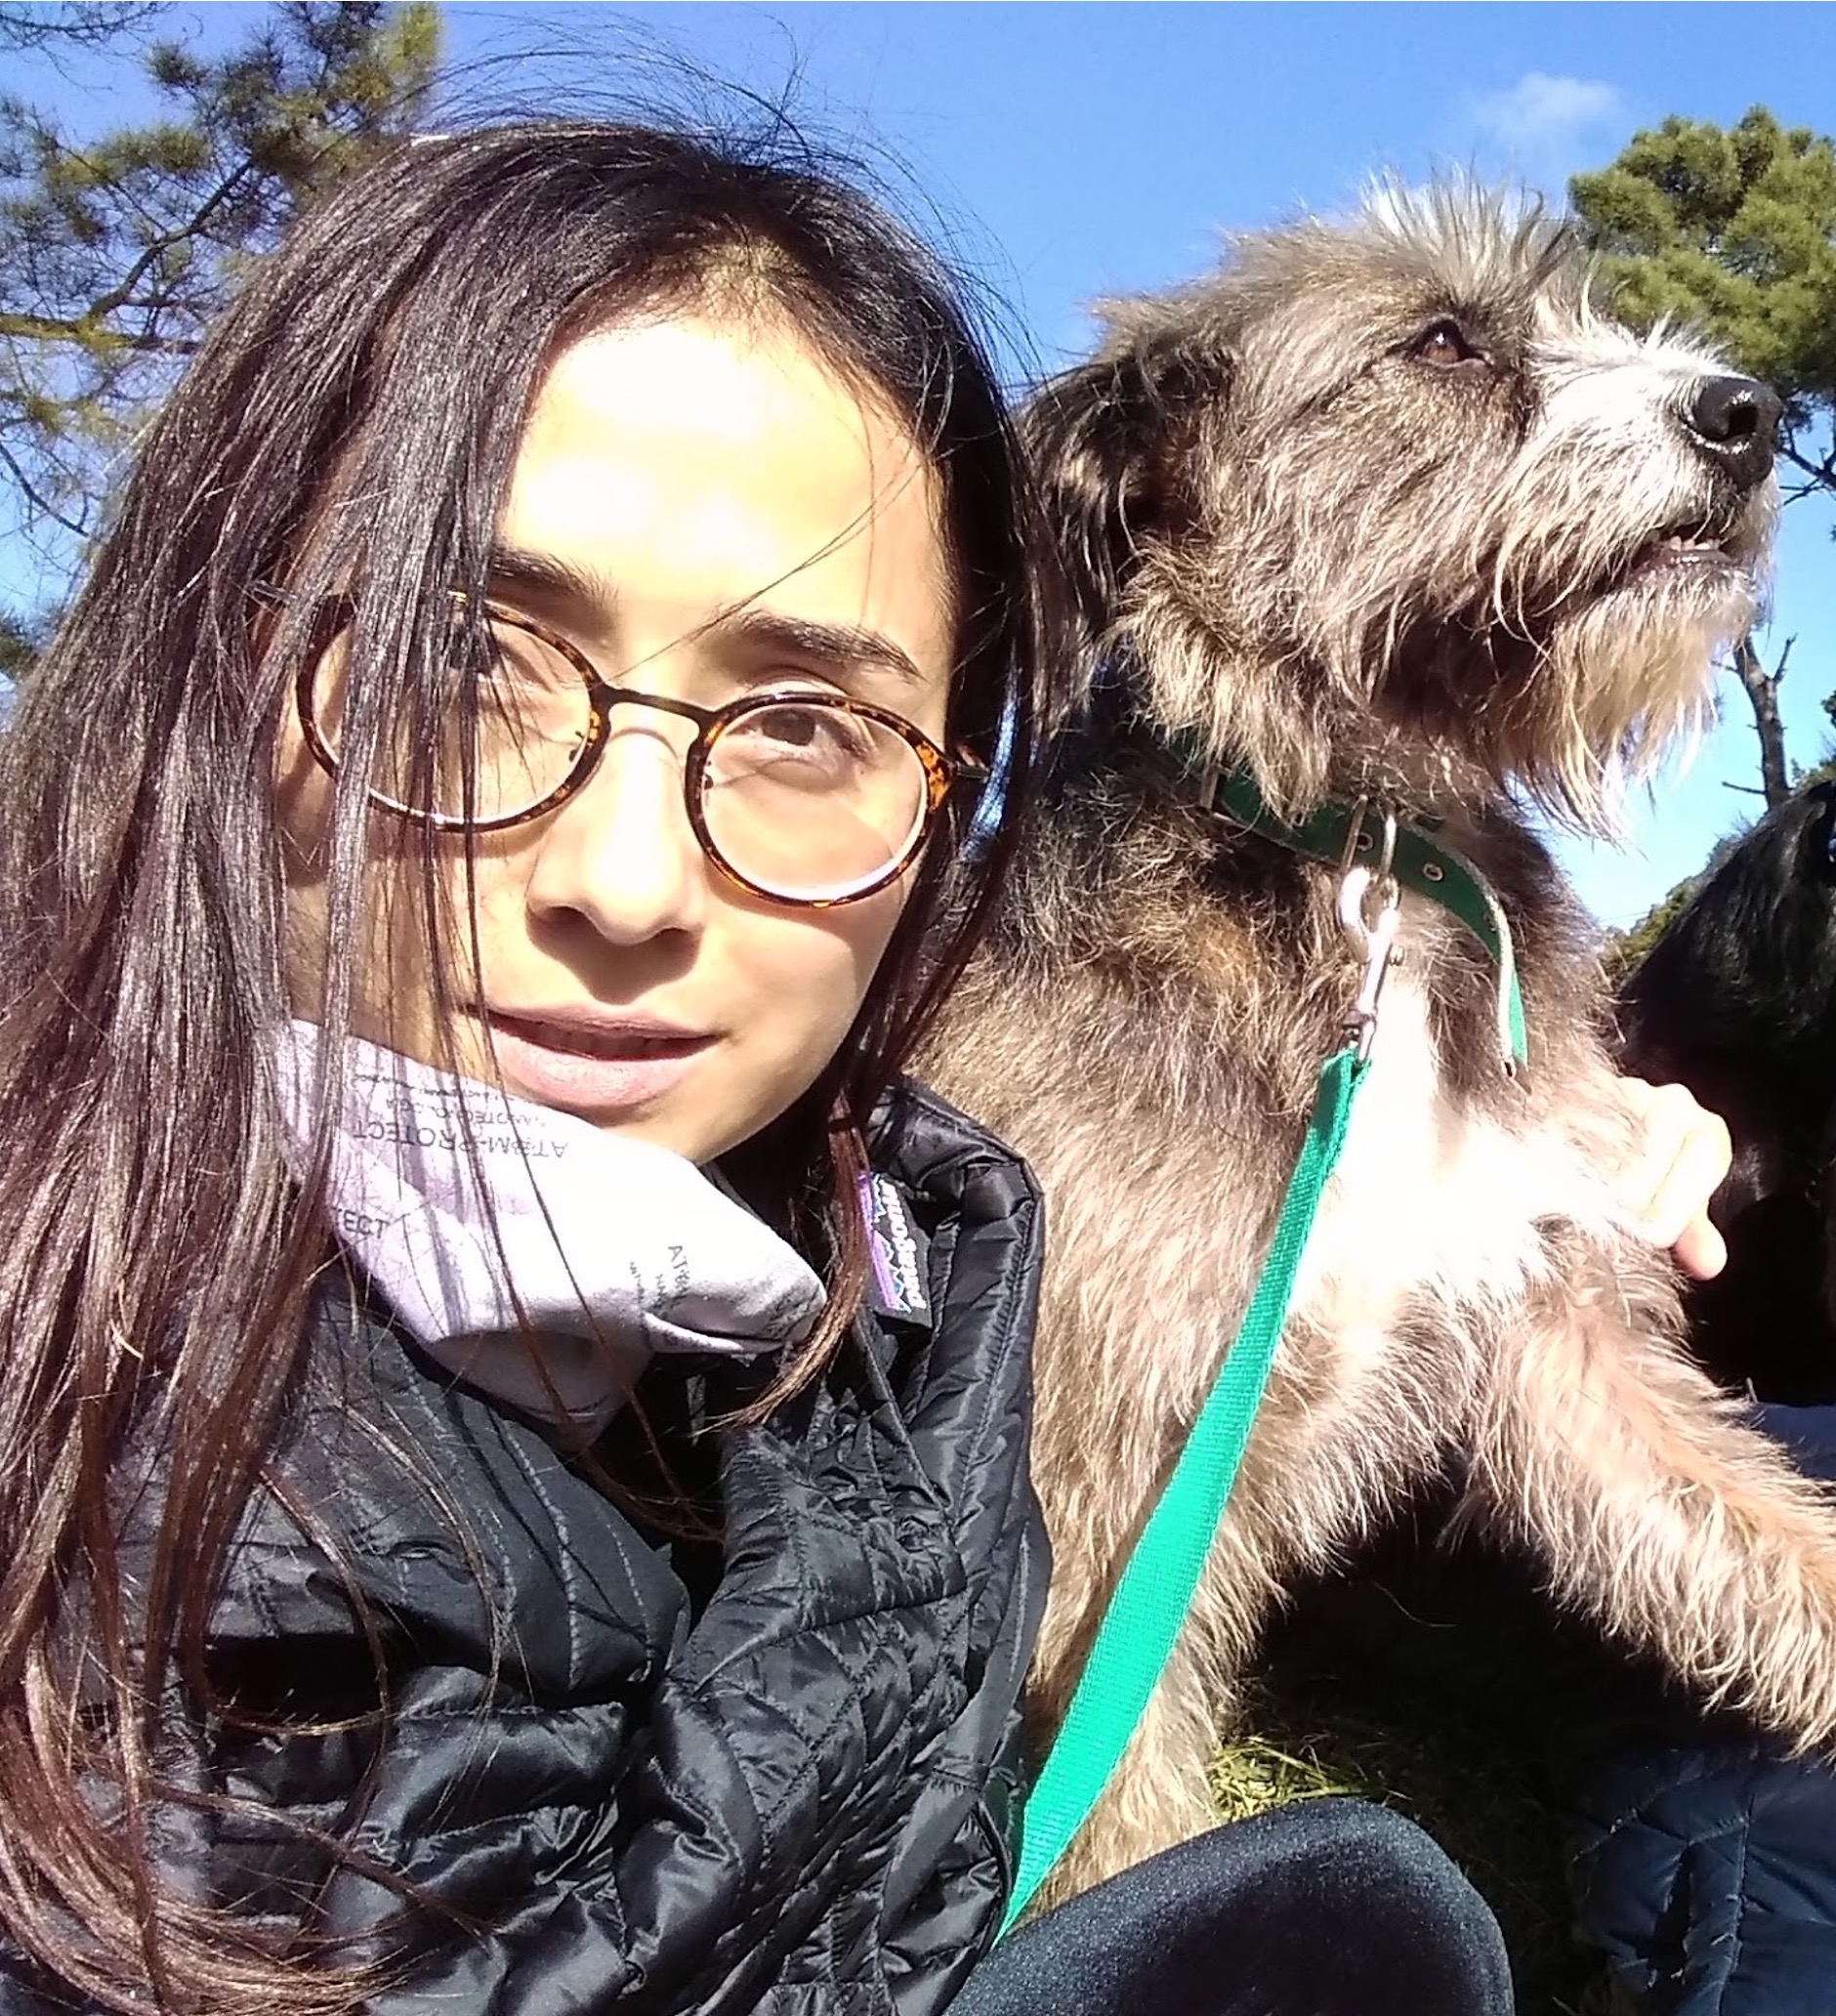 Paz es una mujer de Chile. Ella tiene el pelo largo y negro. Lleva una chaqueta de invierno negra y un par de anteojos con montura, y sostiene a su mascota, un perro peludo que parece estar disfrutando de la luz del sol.